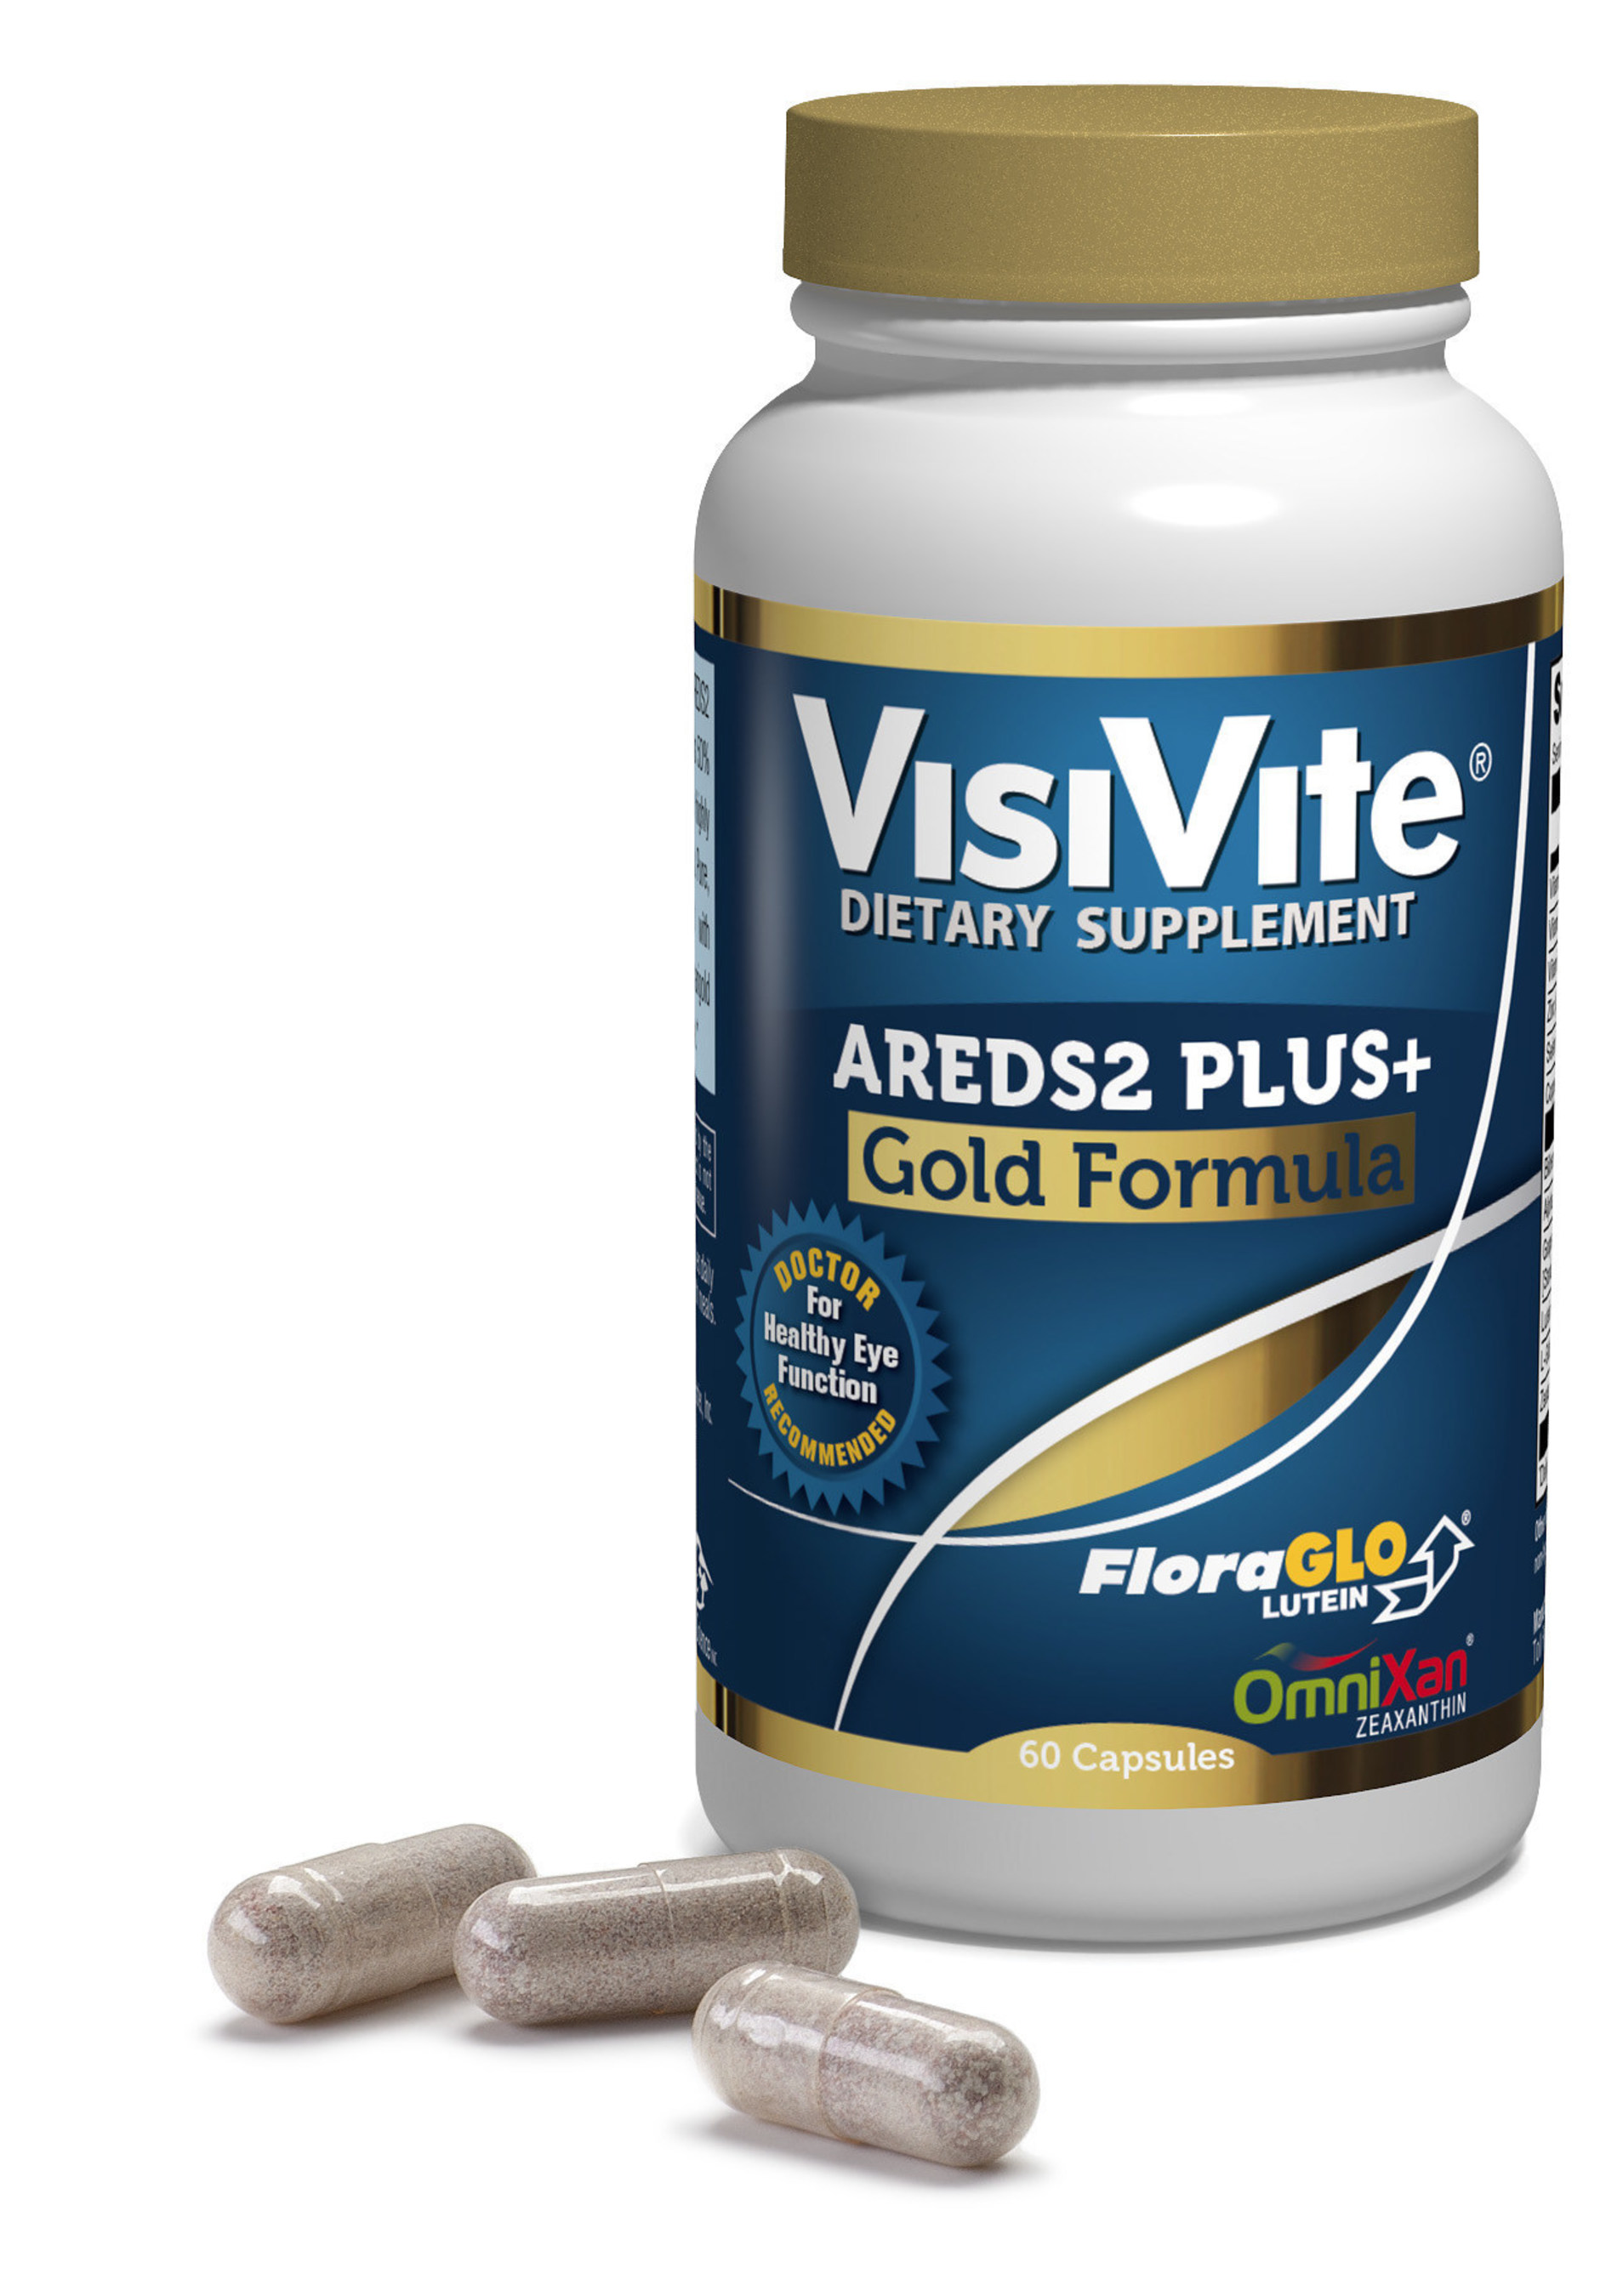 VisiVite's AREDS2 PLUS  Gold macular degeneration formula has 99.8% tolerability.